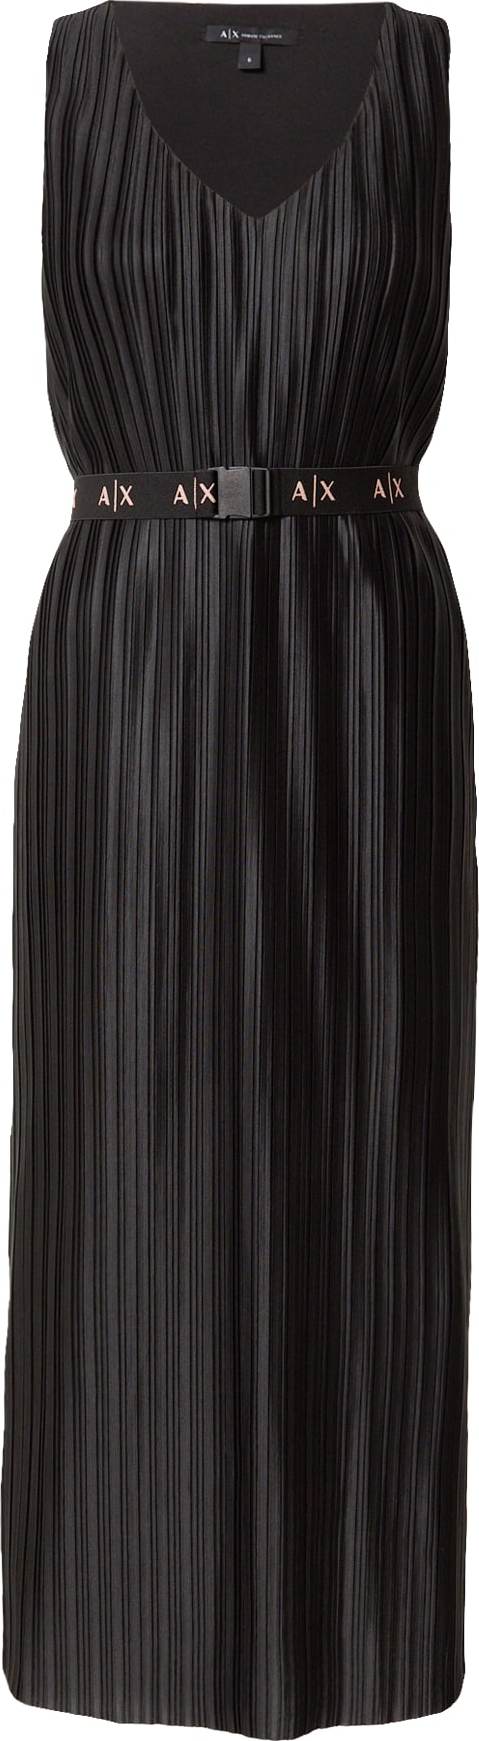 ARMANI EXCHANGE Koktejlové šaty černá / bílá